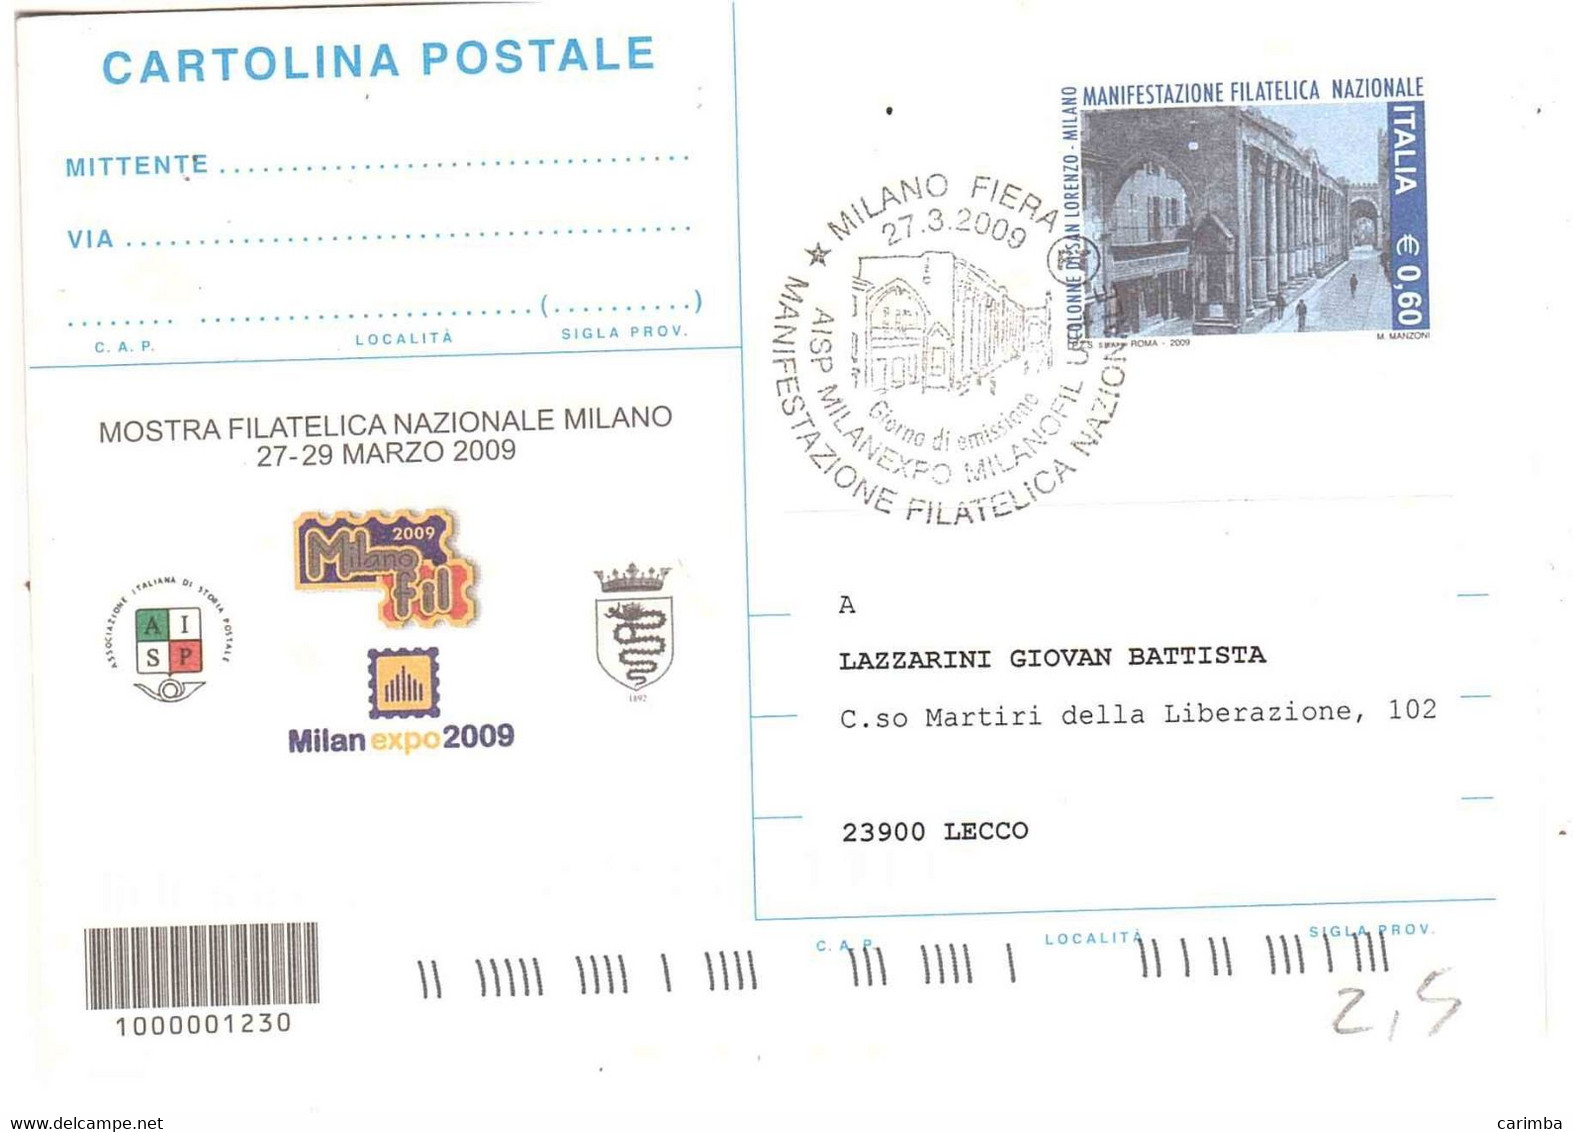 CARTOLINA POSTALE 2009 €0,60 MANIFESTAZIONE FILATELICA COLONNE DI SAN LORENZO MILANO FDC - Philatelic Exhibitions